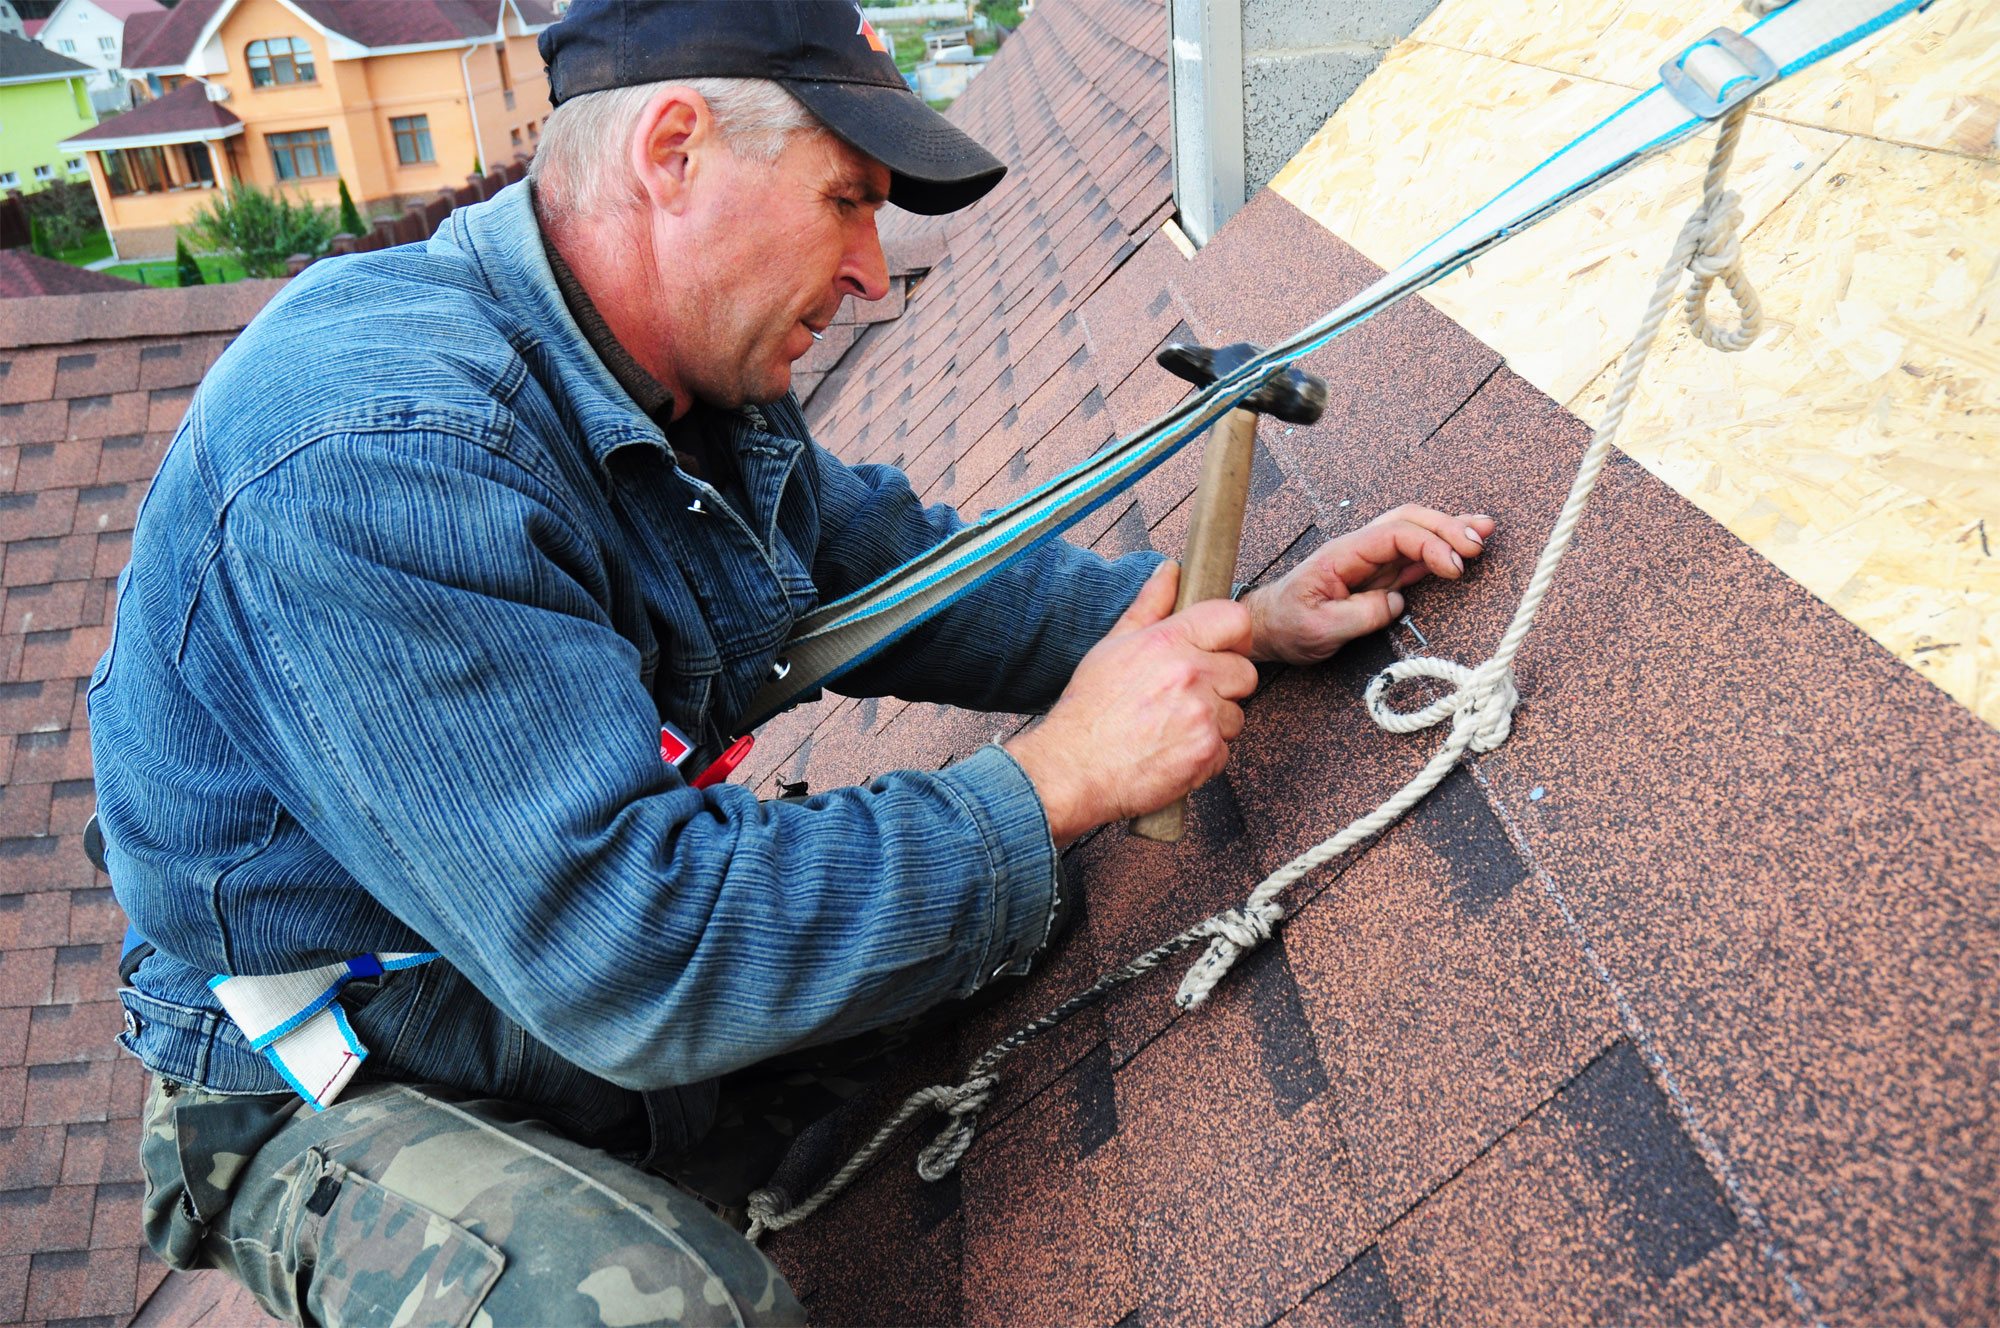 roofingcontractors